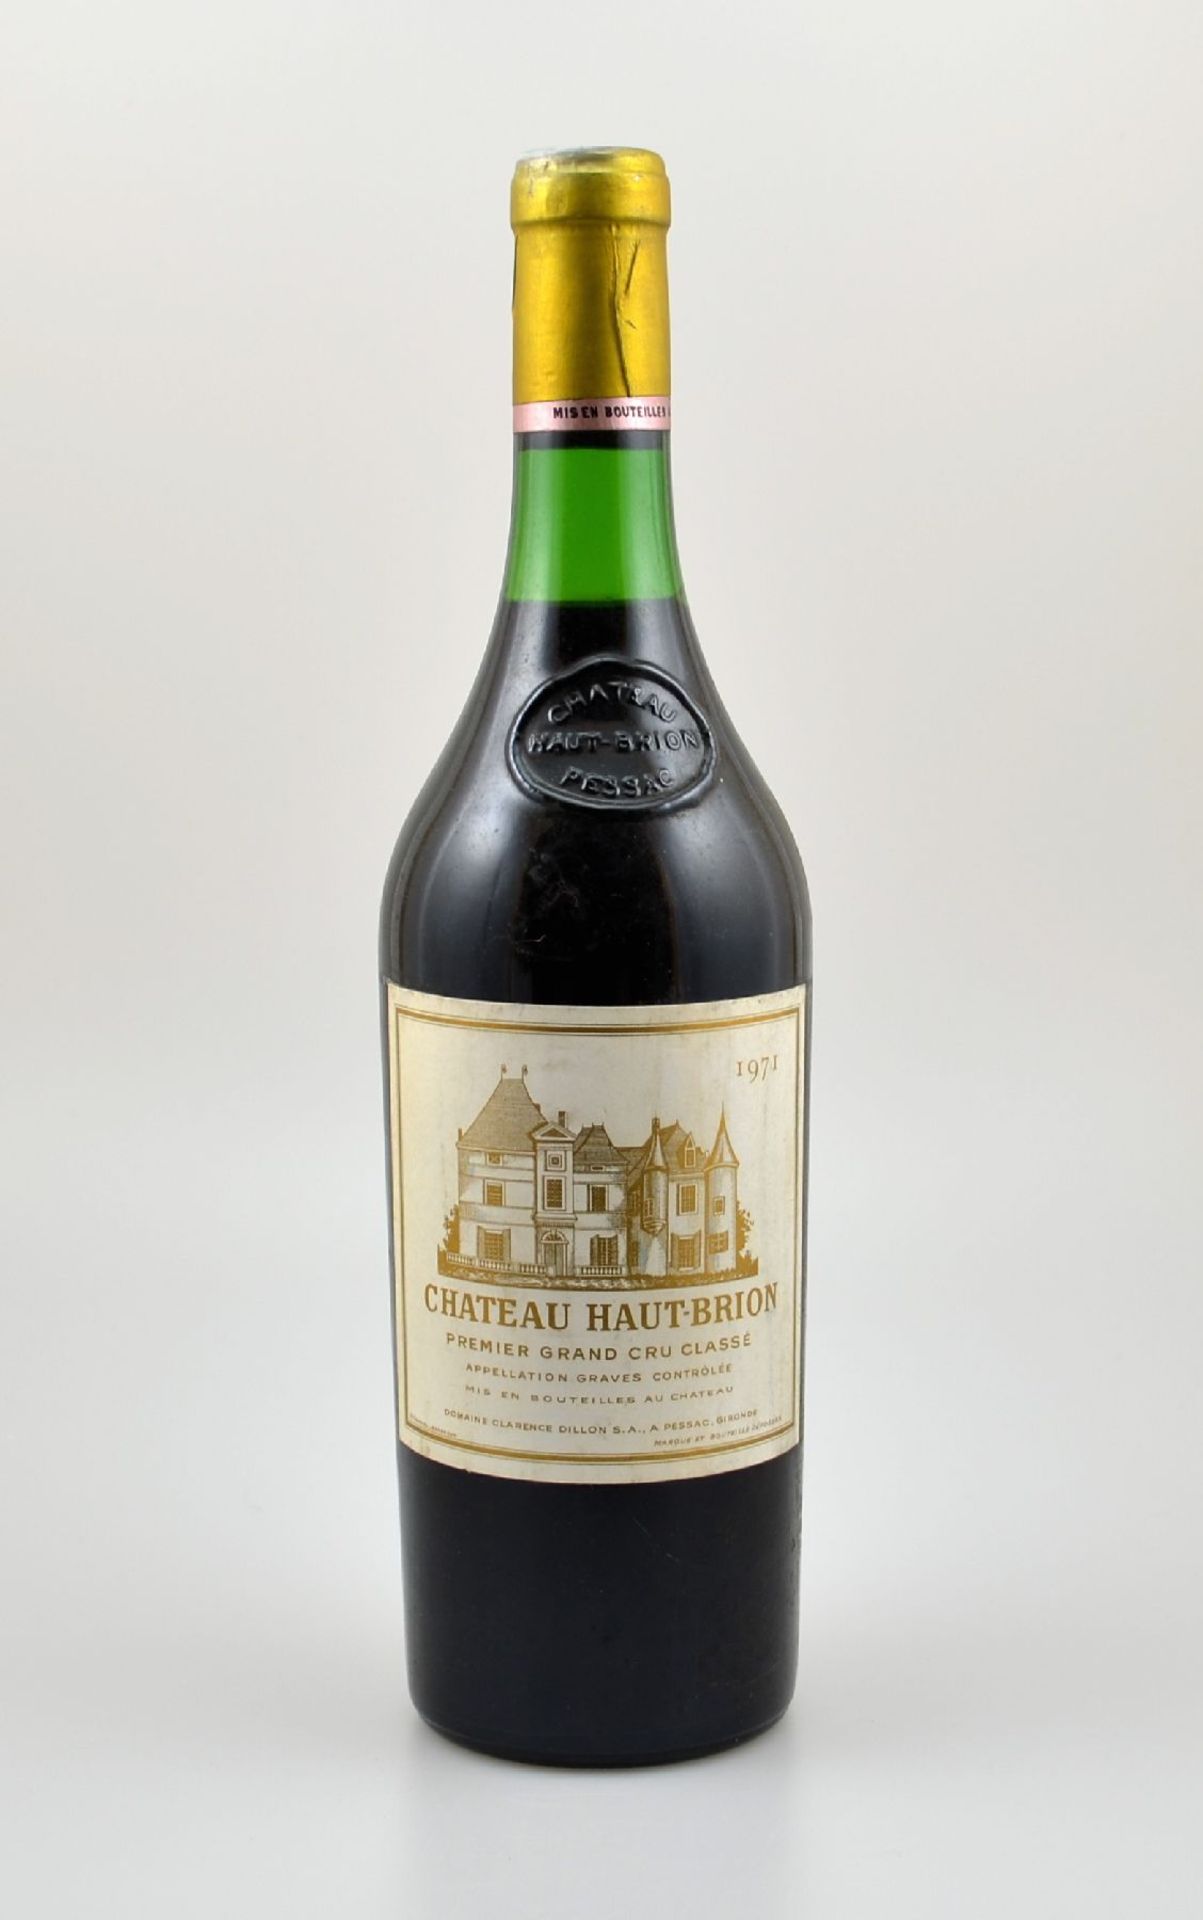 1 Flasche 1971 Chateau Haut-Brion, Pessac-Leognan, Premier Grand Cru Classe, Abstand zwischen Kapsel